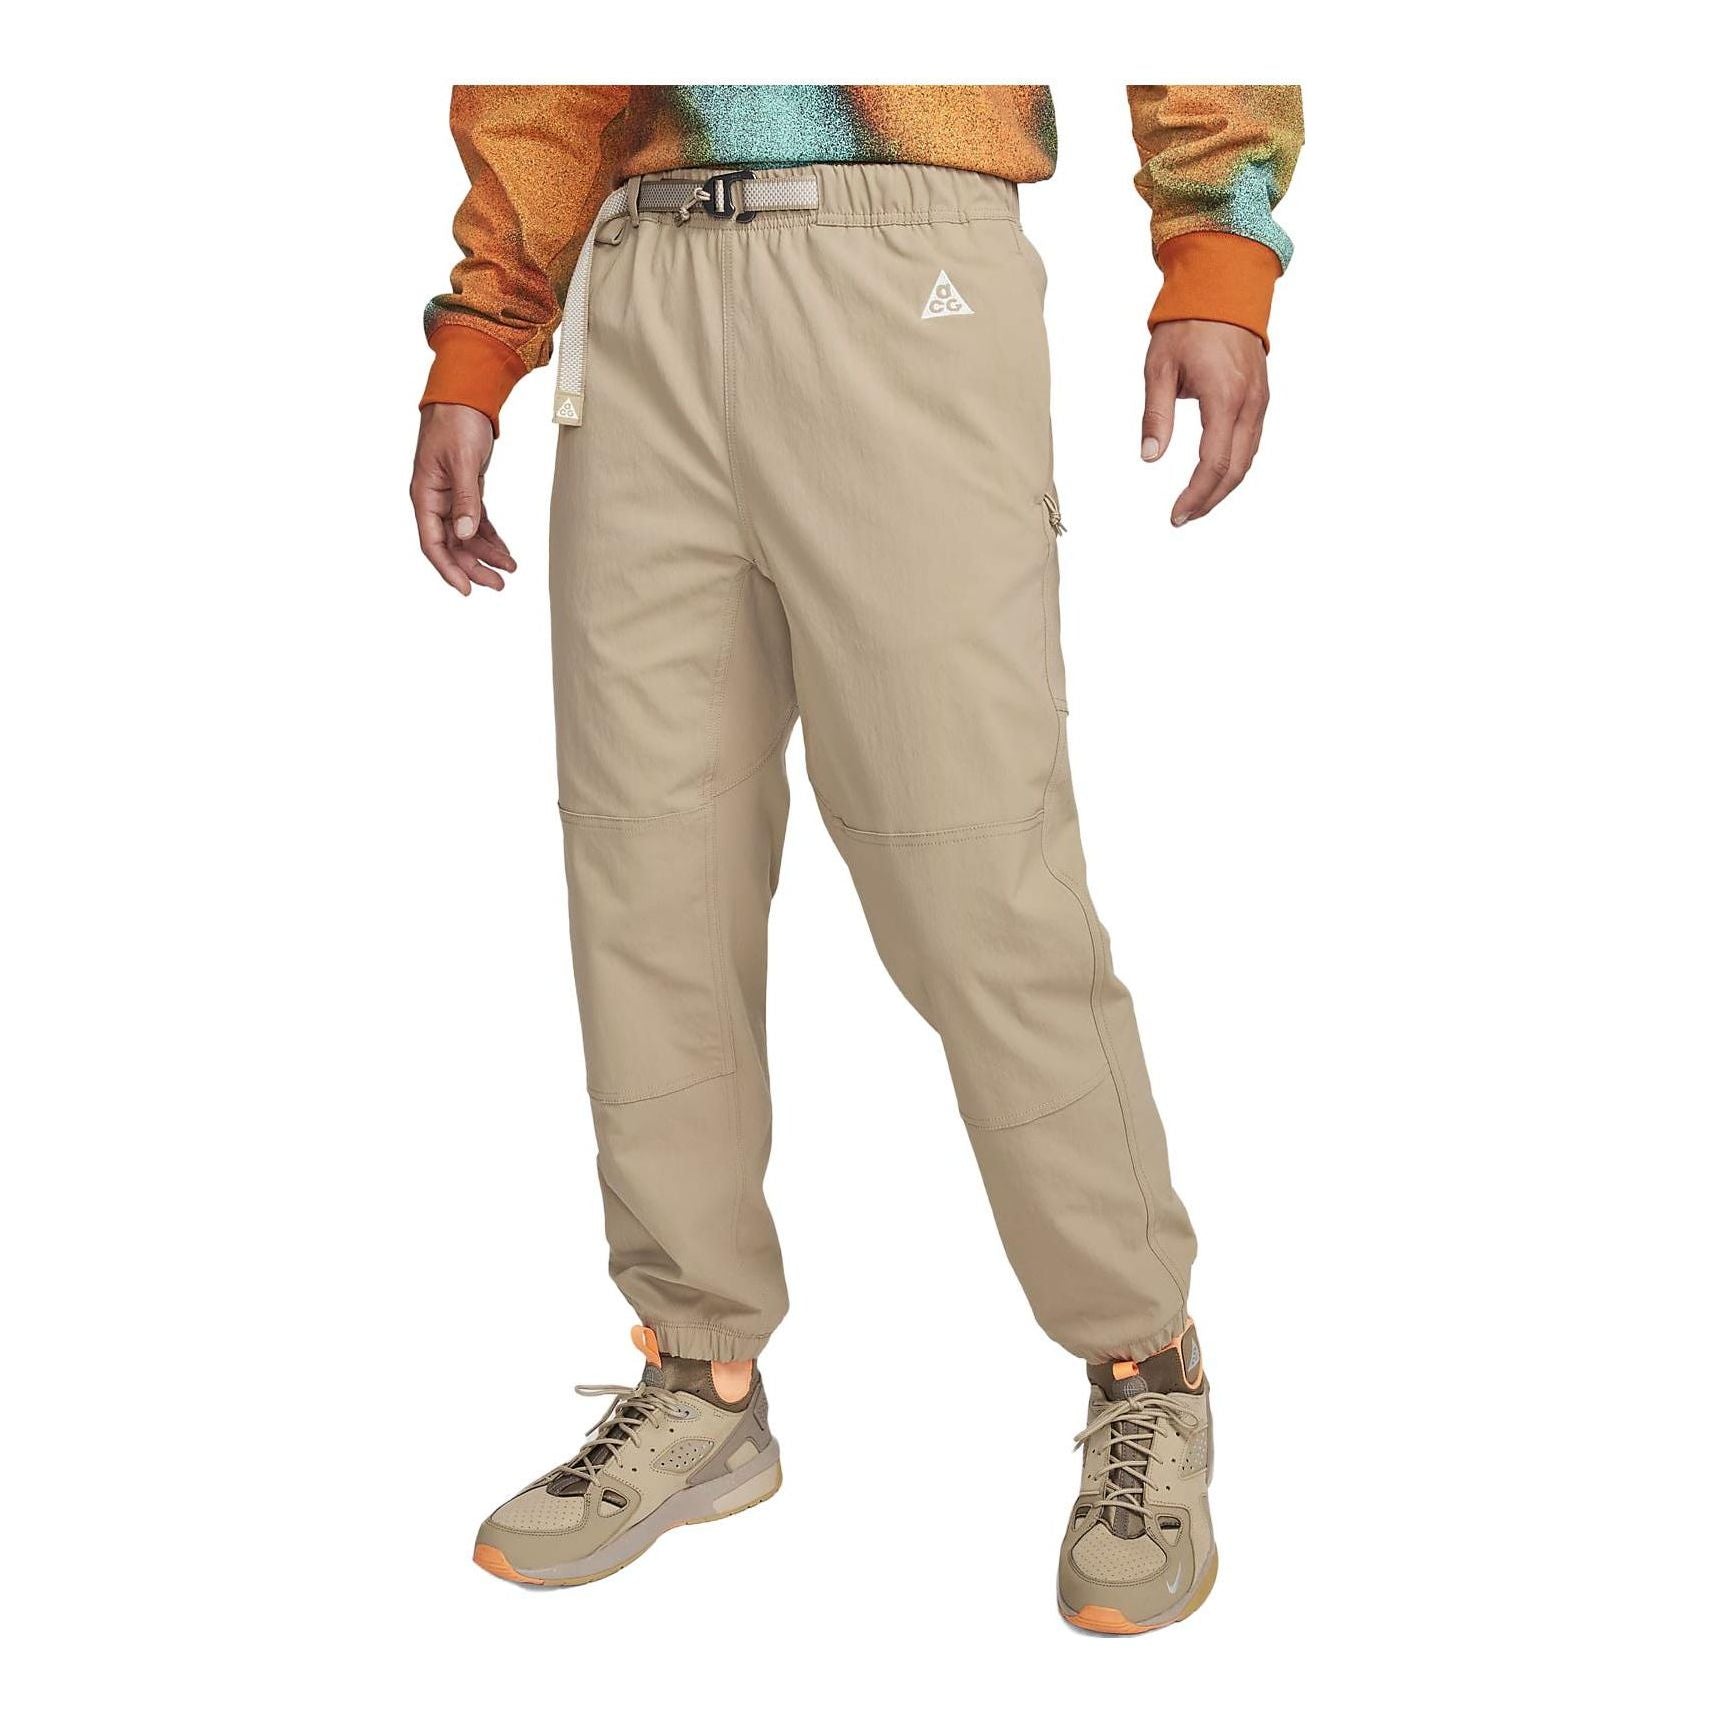 Nike Nrg Acg Trail Pants 'Khaki' CV0661-248